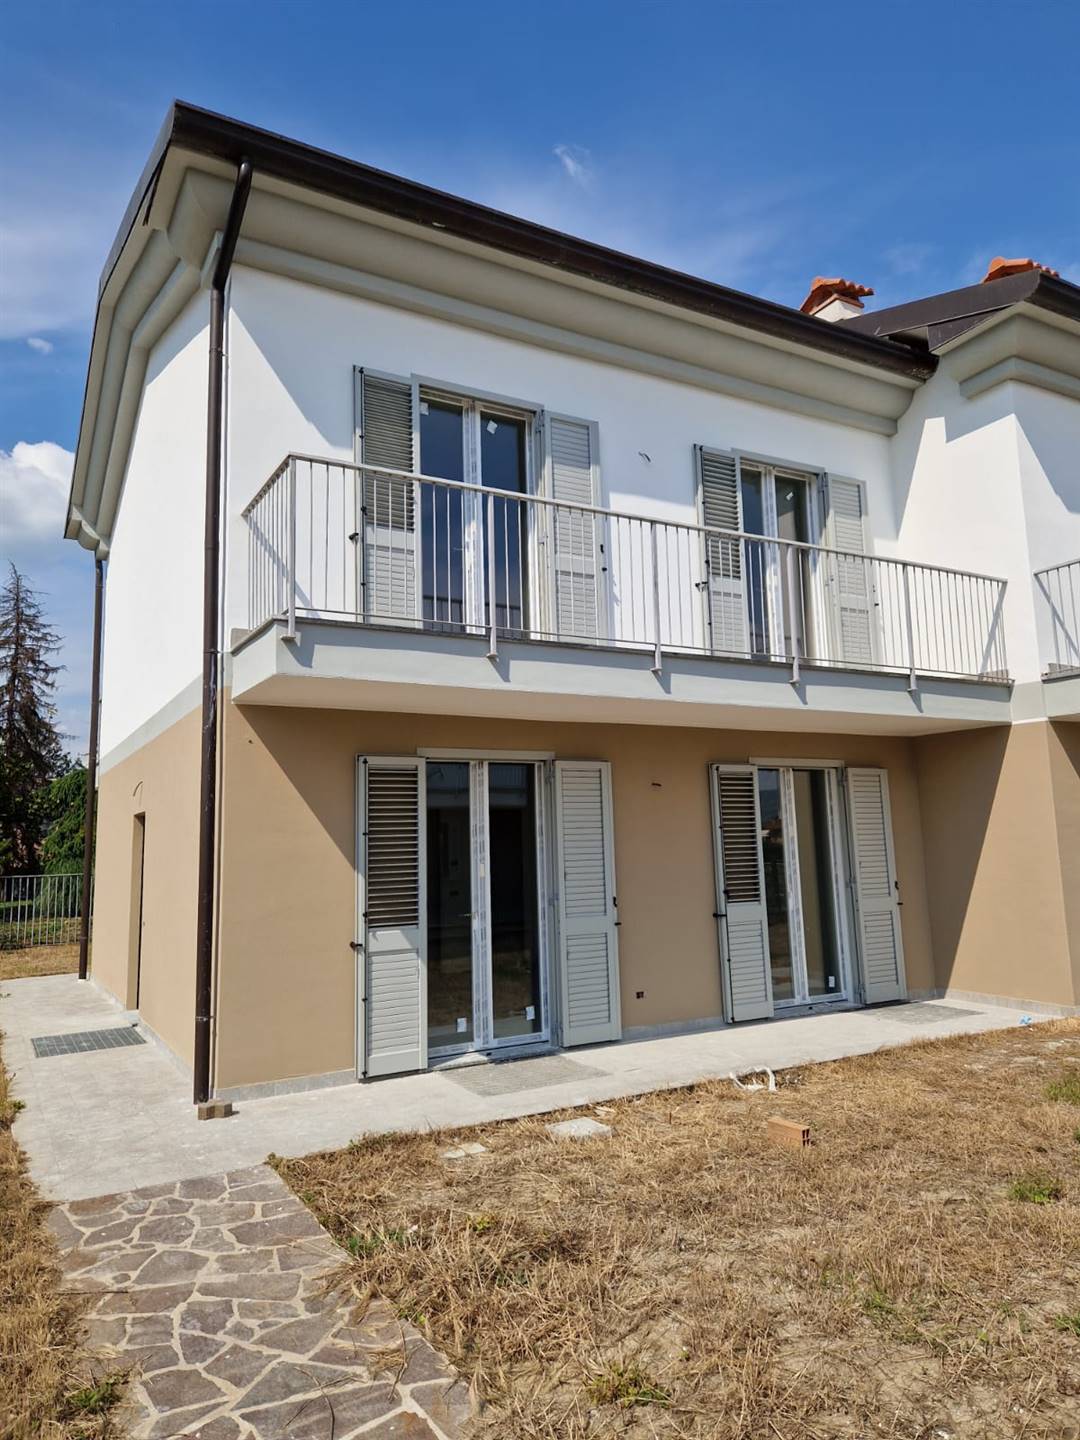 Villa in vendita a Voghera, 6 locali, prezzo € 265.000 | PortaleAgenzieImmobiliari.it